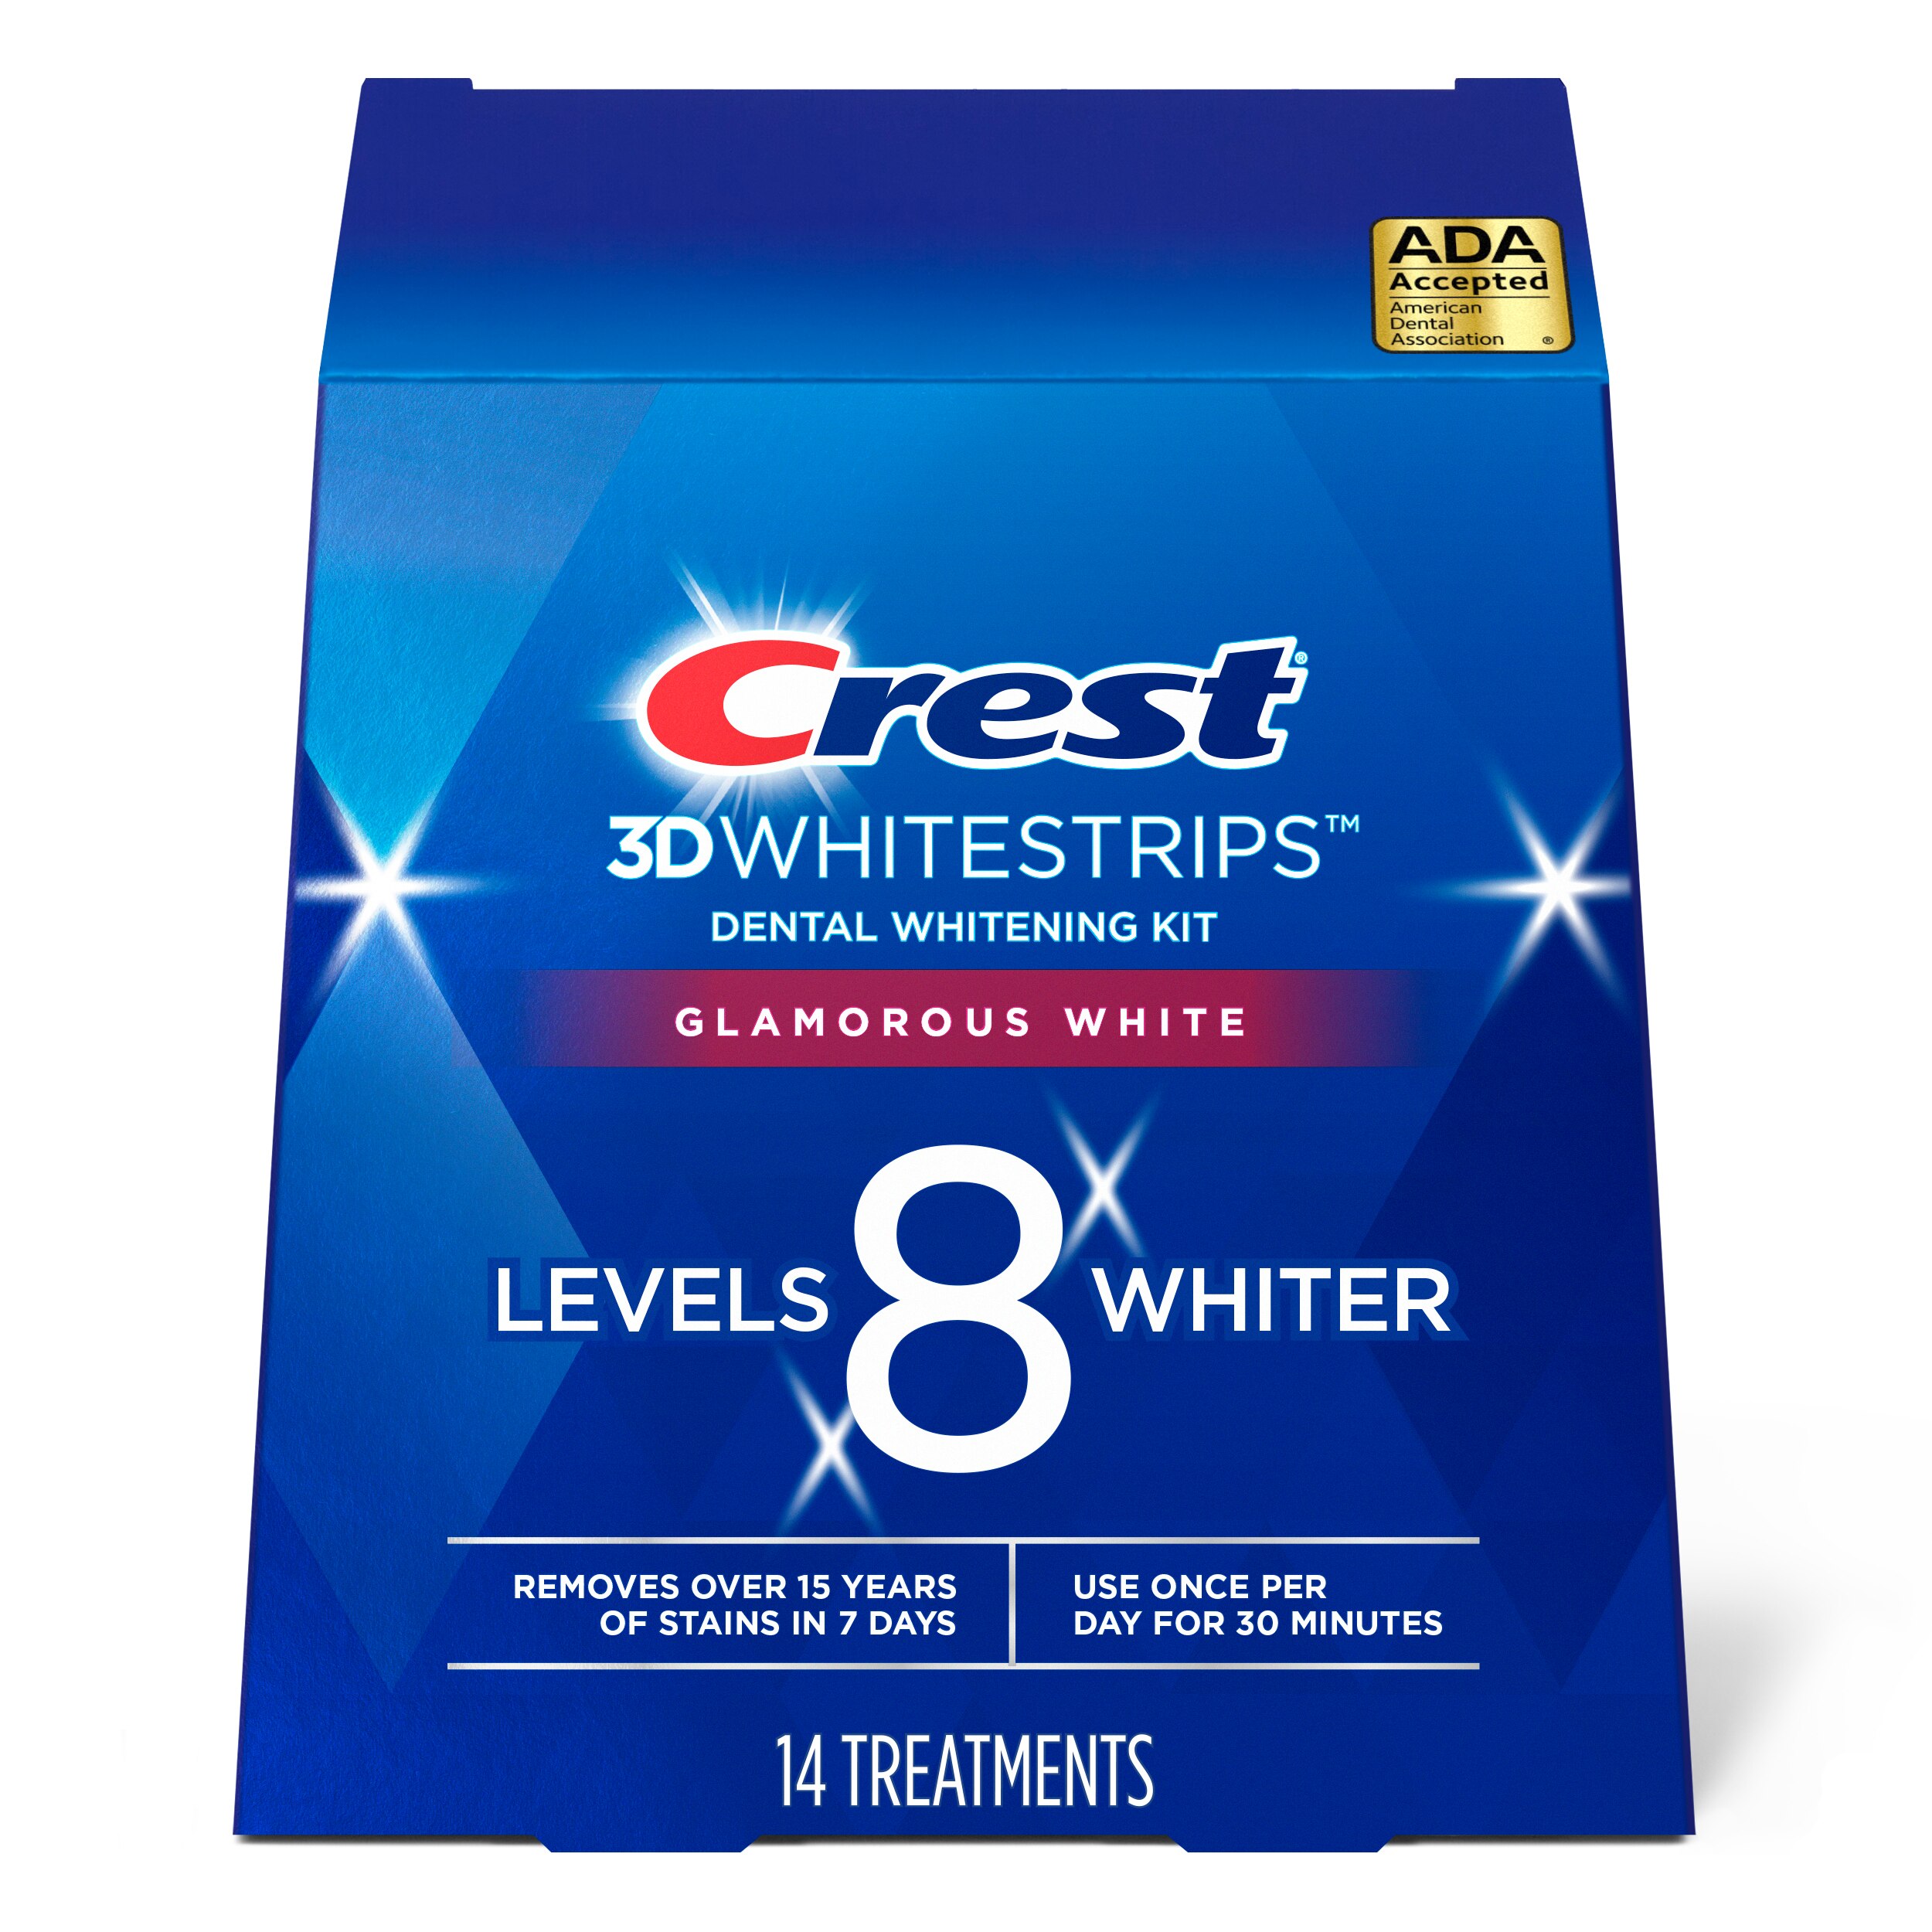 Crest 3D Whitestrips Glamorous White - Kit de blanqueamiento dental, 14 tratamientos